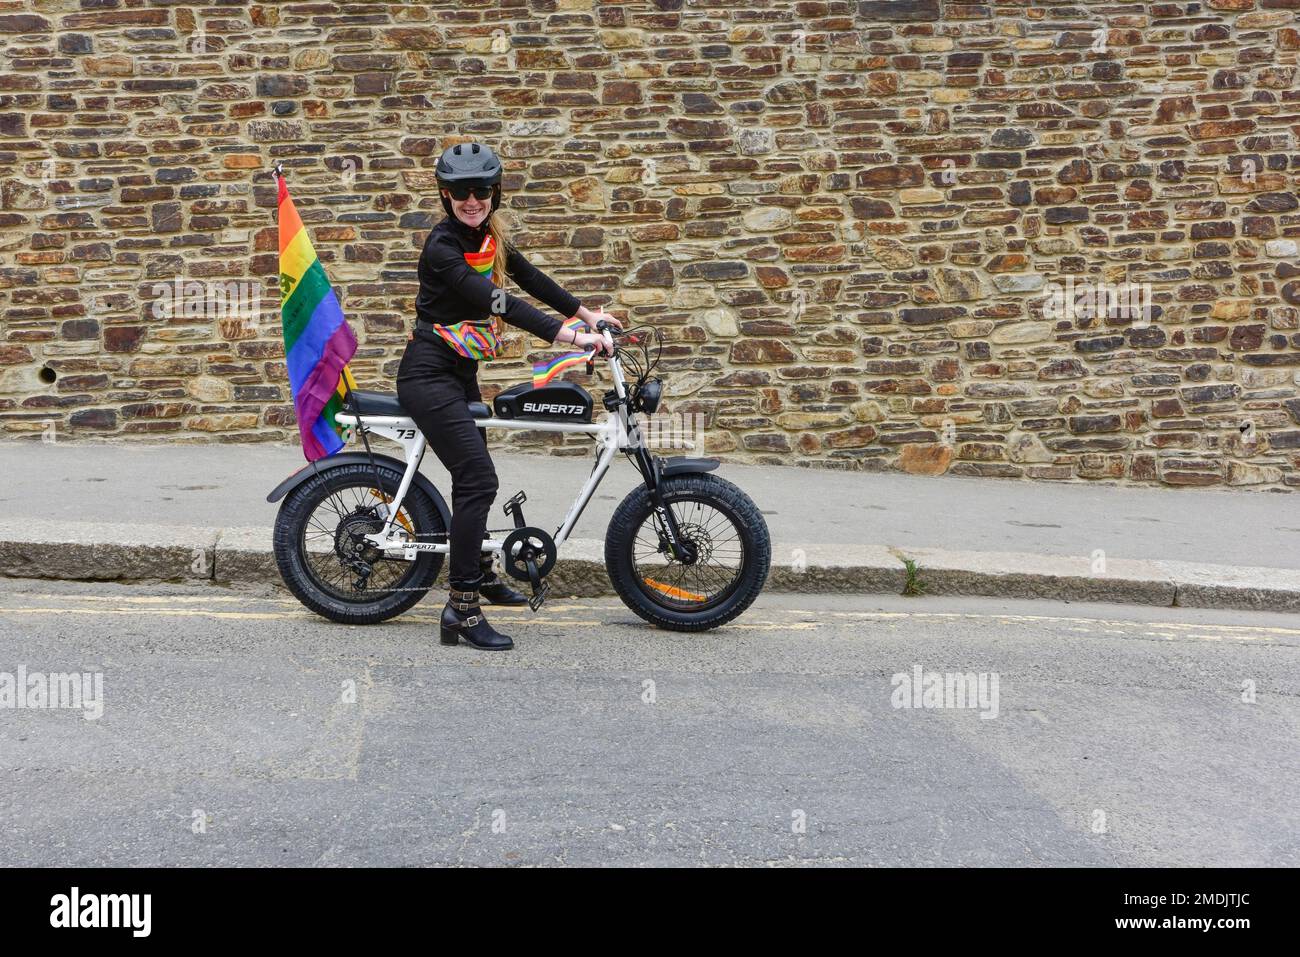 Una donna che utilizza biciclette elettriche Super 73 all'inizio della vivace e colorata Cornovaglia è orgogliosa della sfilata Pride nel centro di Newquay nel Regno Unito. Foto Stock